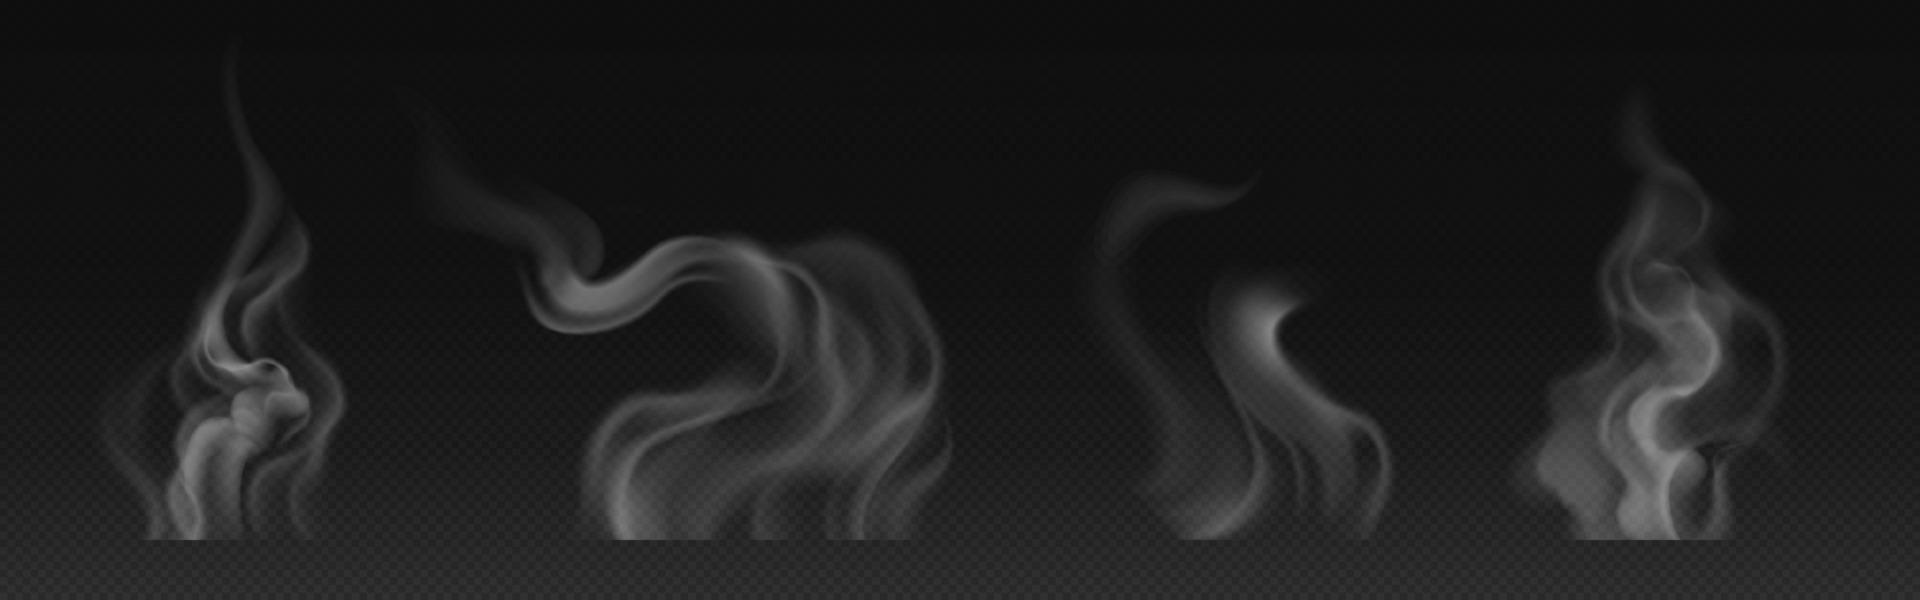 humo de té, taza de café, vapor de comida o nubes de vapor sobre fondo negro. vector